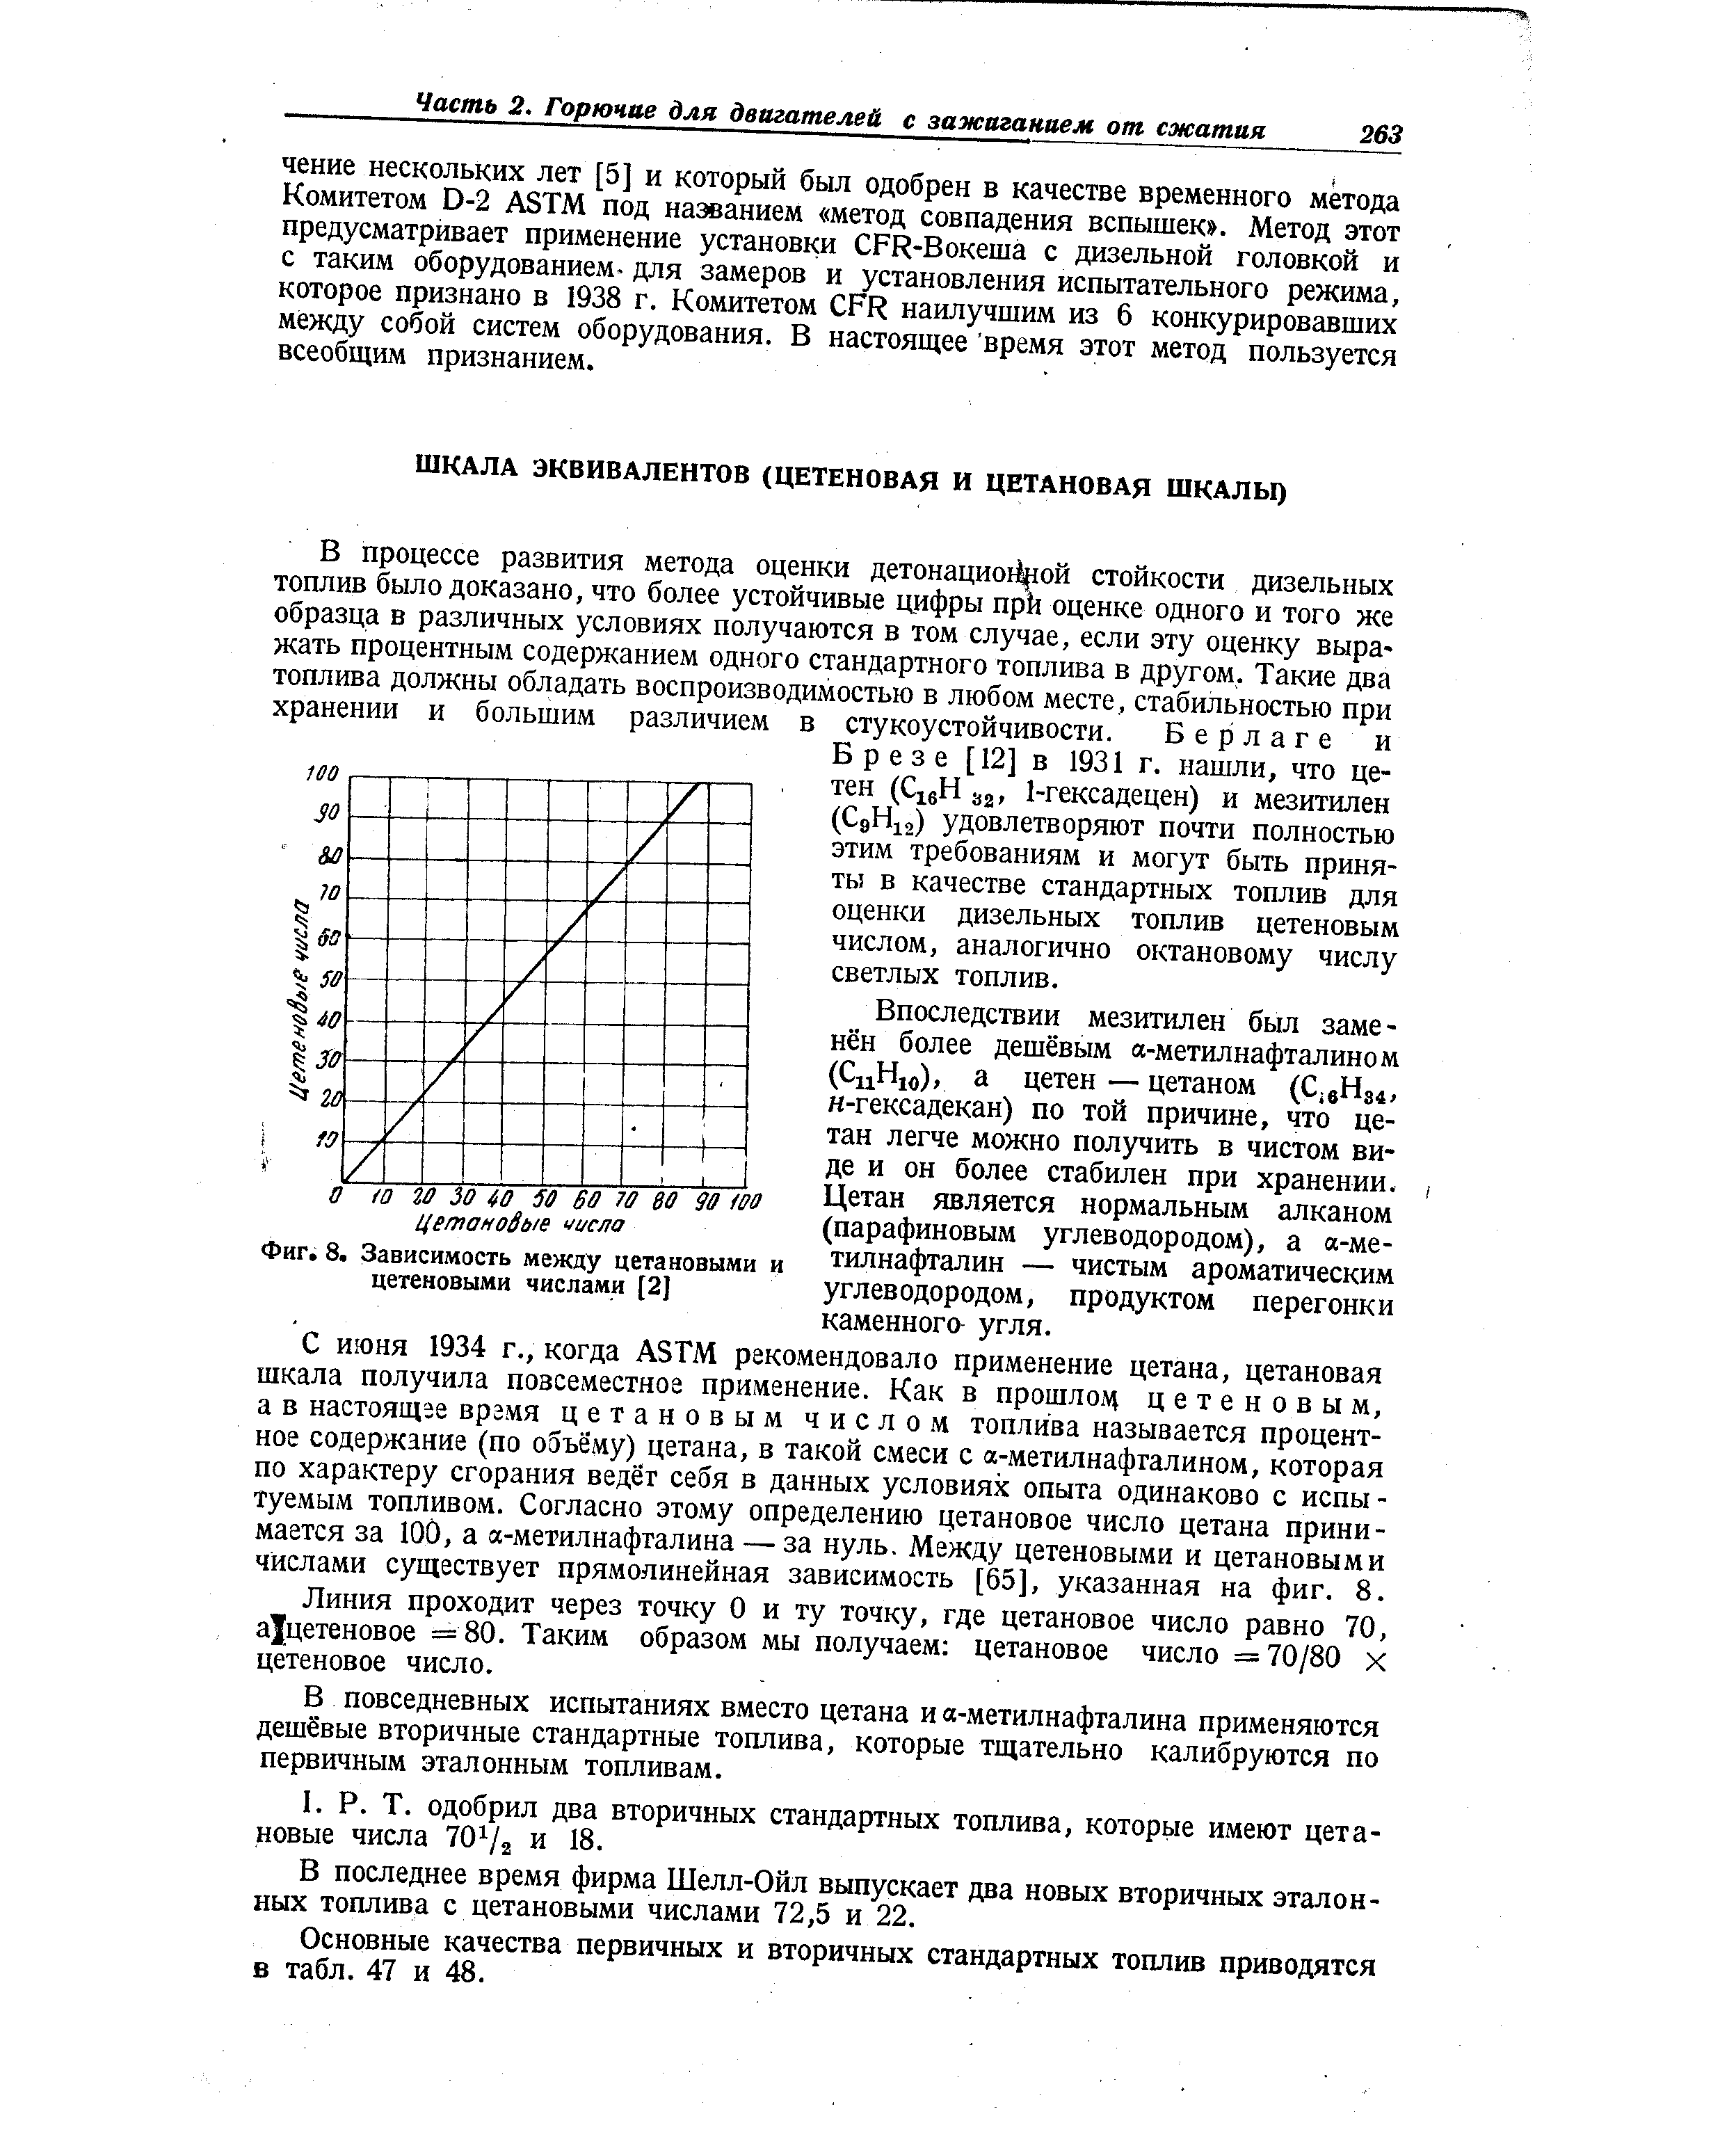 Б р е 3 е [12] в 1931 г. нашли, что цетен ( i H 32, 1-гексадецен) и мезитилен (С9Н12) удовлетворяют почти полностью этим требованиям и могут быть приняты в качестве стандартных топлив для оценки дизельных топлив цетеновым числом, аналогично октановому числу светлых топлив.